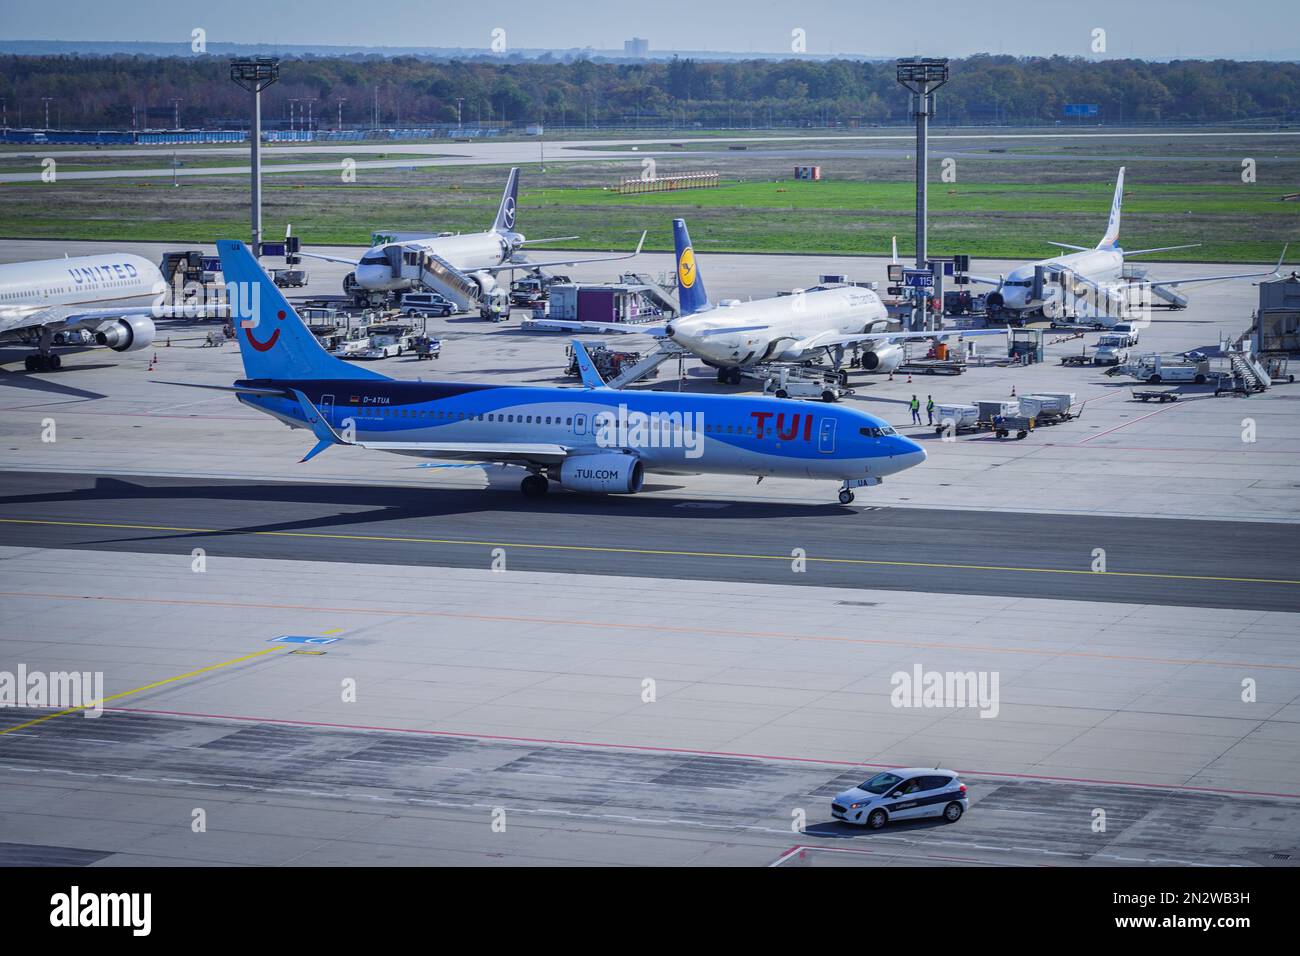 Un avion Blue Tui sur la piste de l'aéroport de Francfort avec d'autres avions en arrière-plan Banque D'Images